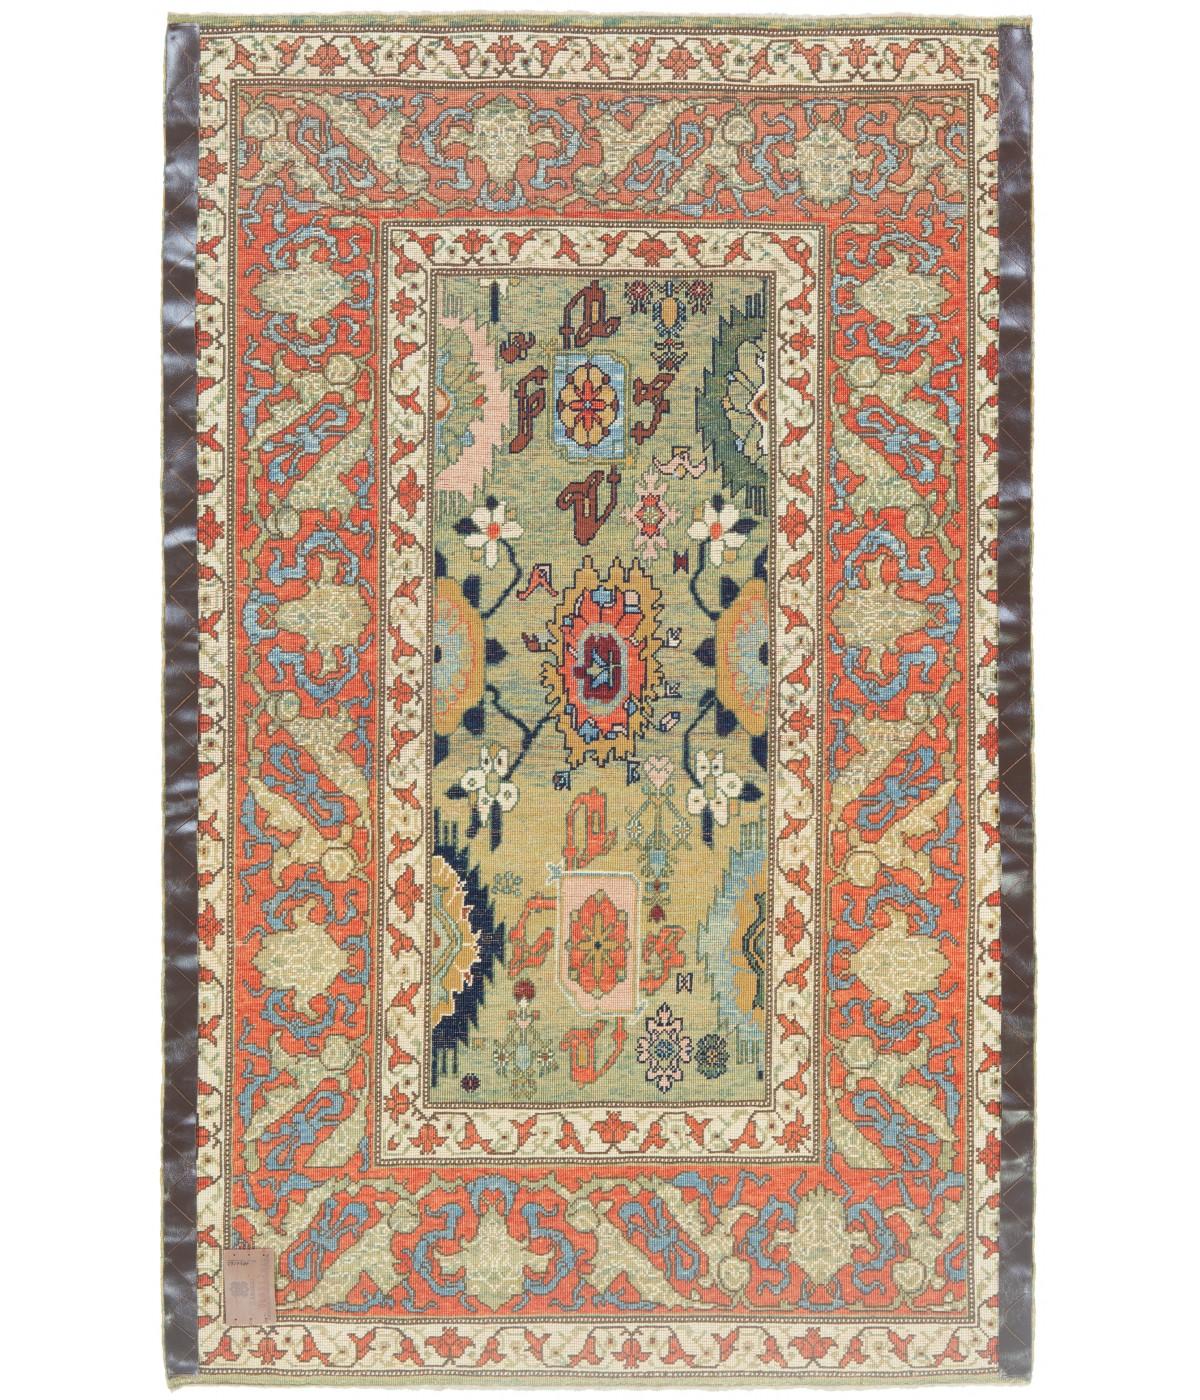 Ce motif décalé est composé de palmettes et de fleurs, on a l'impression qu'il n'est qu'une partie d'un schéma plus large conçu pour les tapis du XIXe siècle de la région de Design/One, au Kurdistan oriental. Des palmettes très similaires, dessinées